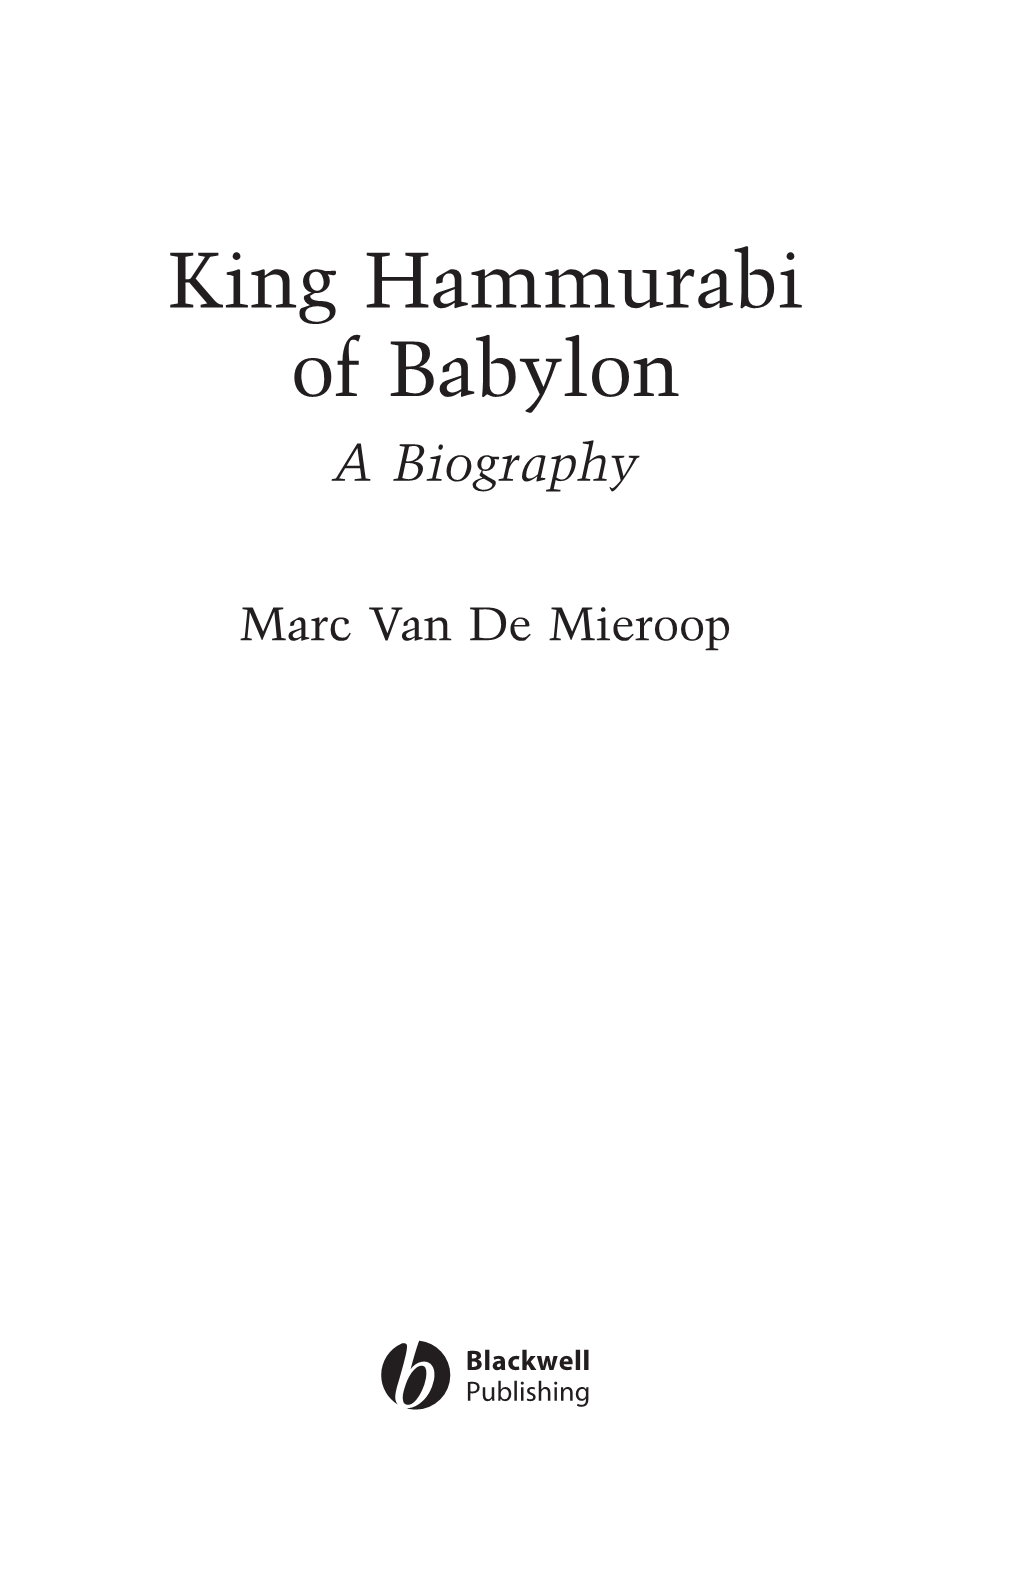 King Hammurabi of Babylon a Biography